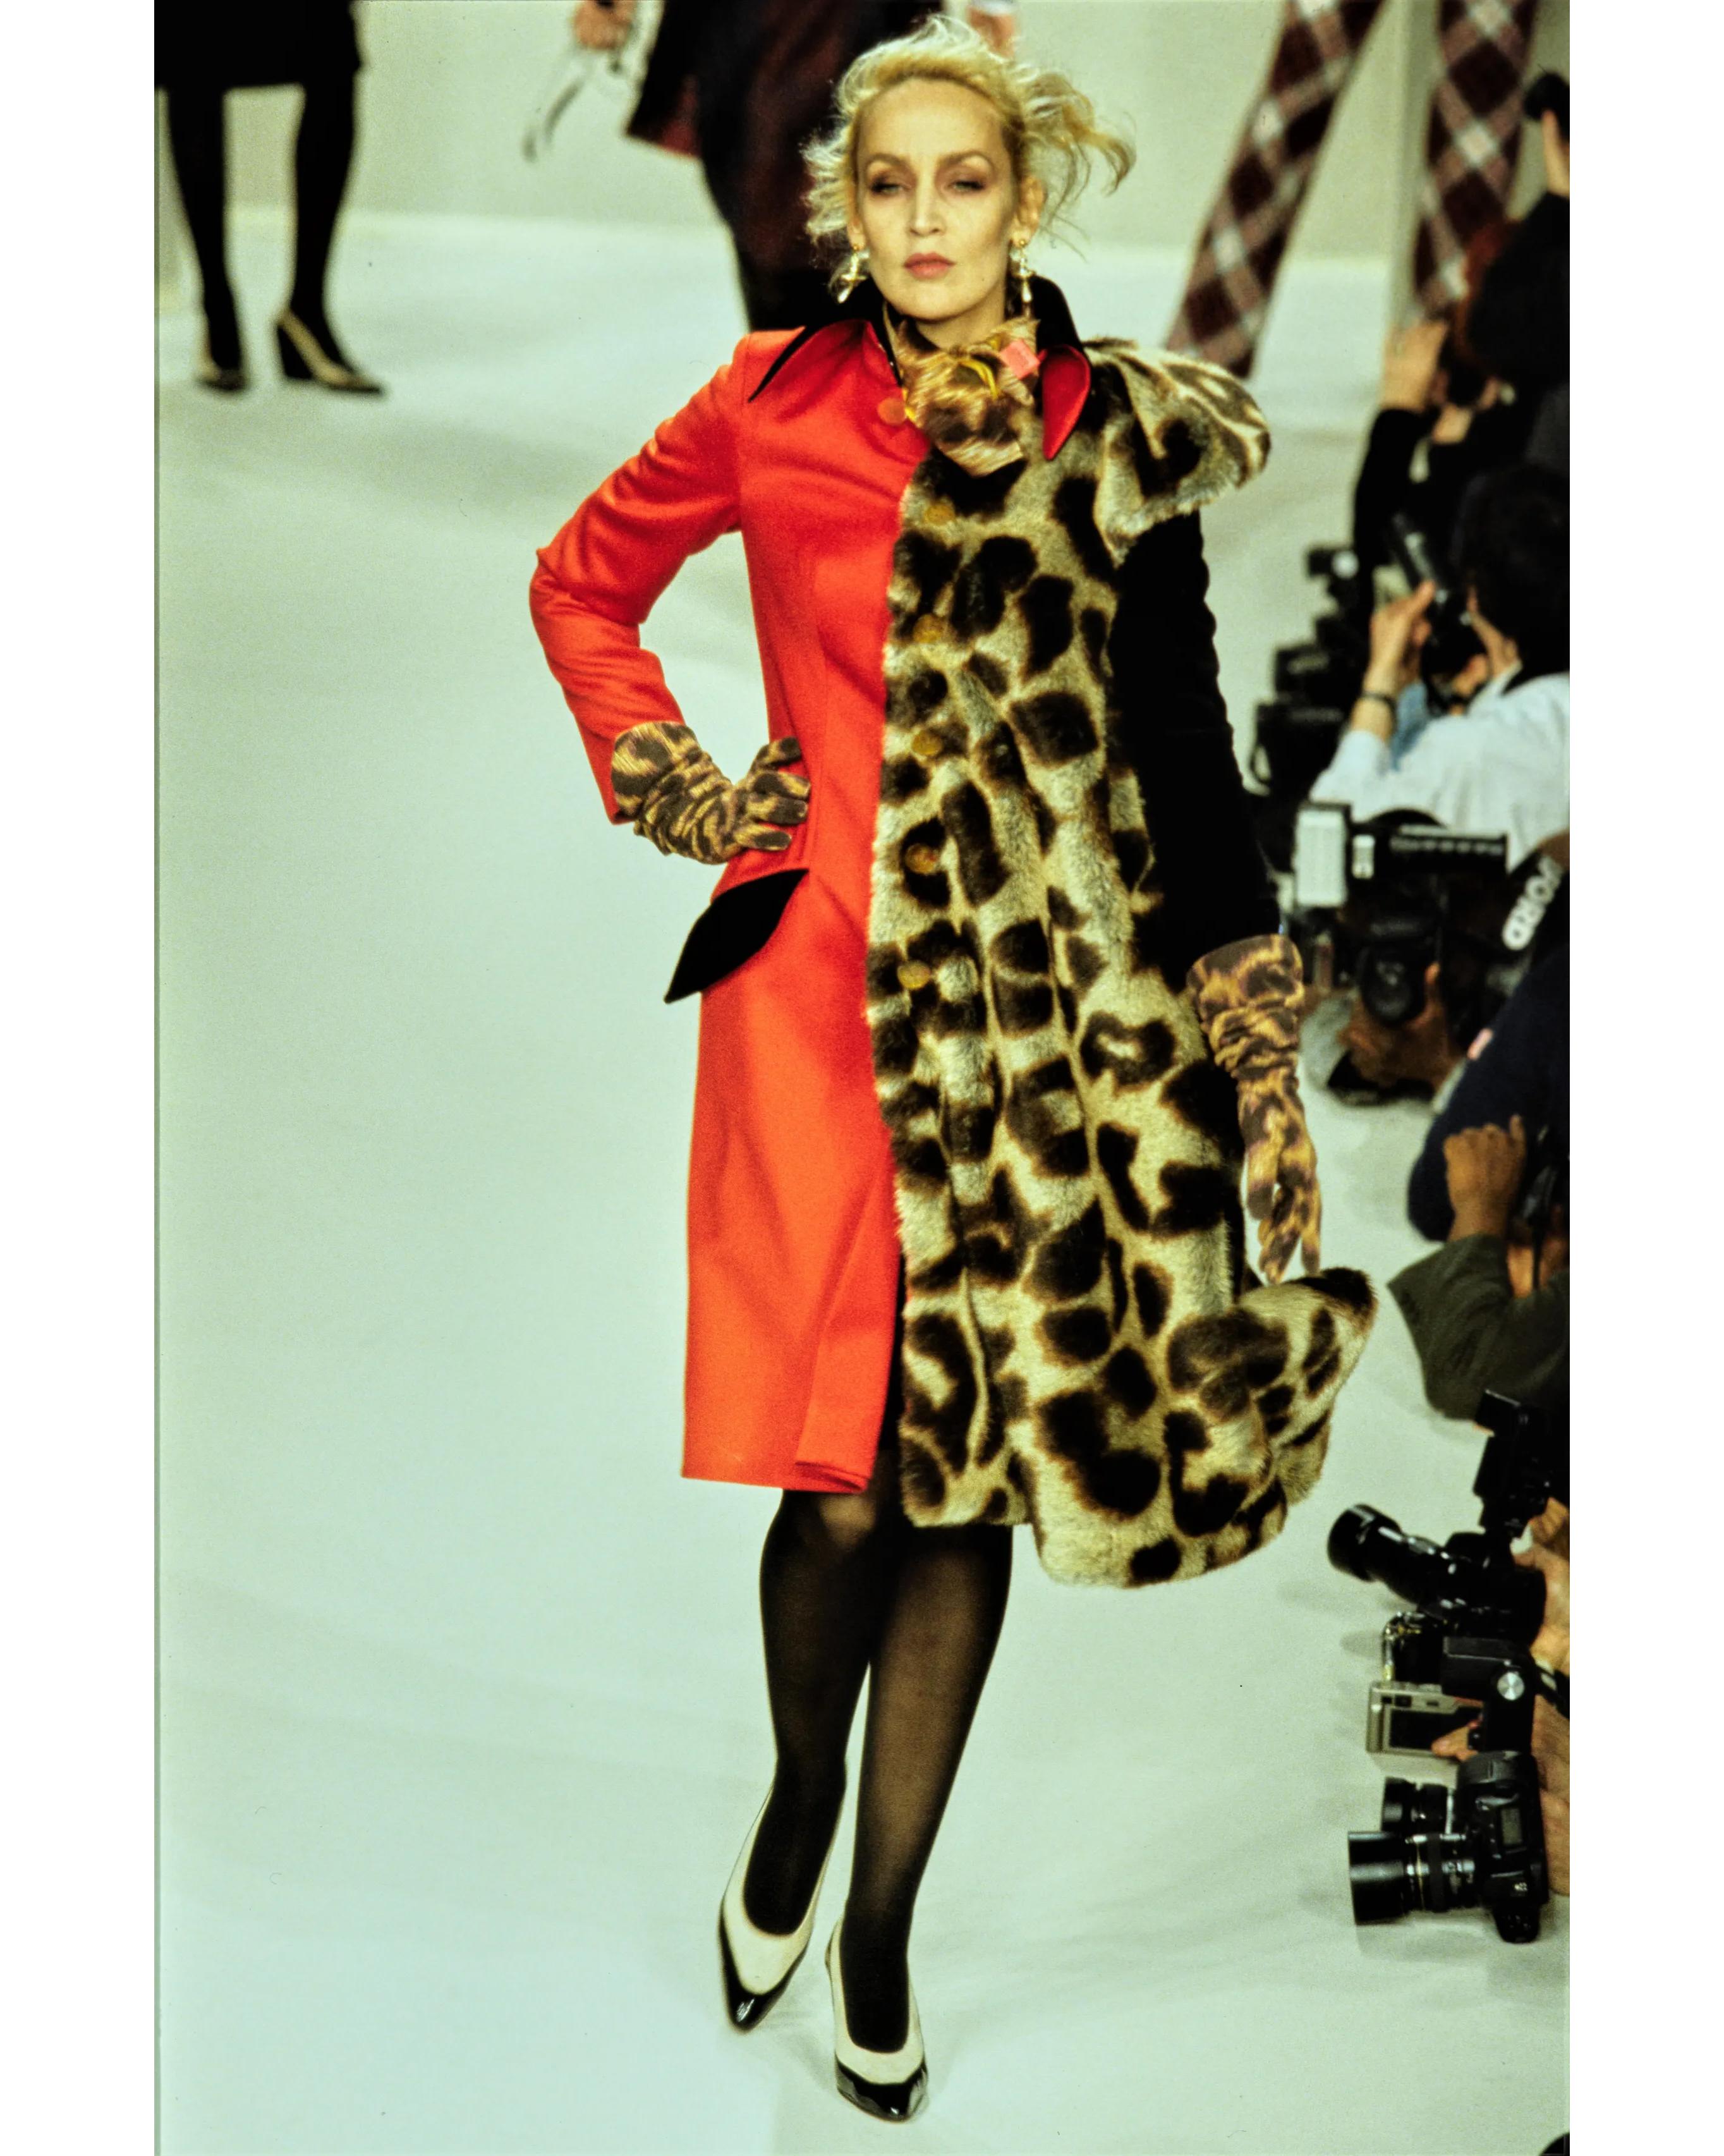 A/W 1996 Vivienne Westwood Gold Label 'Storm in a Teacup' Collection S. Manteau au genou rouge et imprimé léopard contrasté. Le côté droit présente un manteau rouge, et le côté gauche une superposition de manches courtes en fausse fourrure léopard